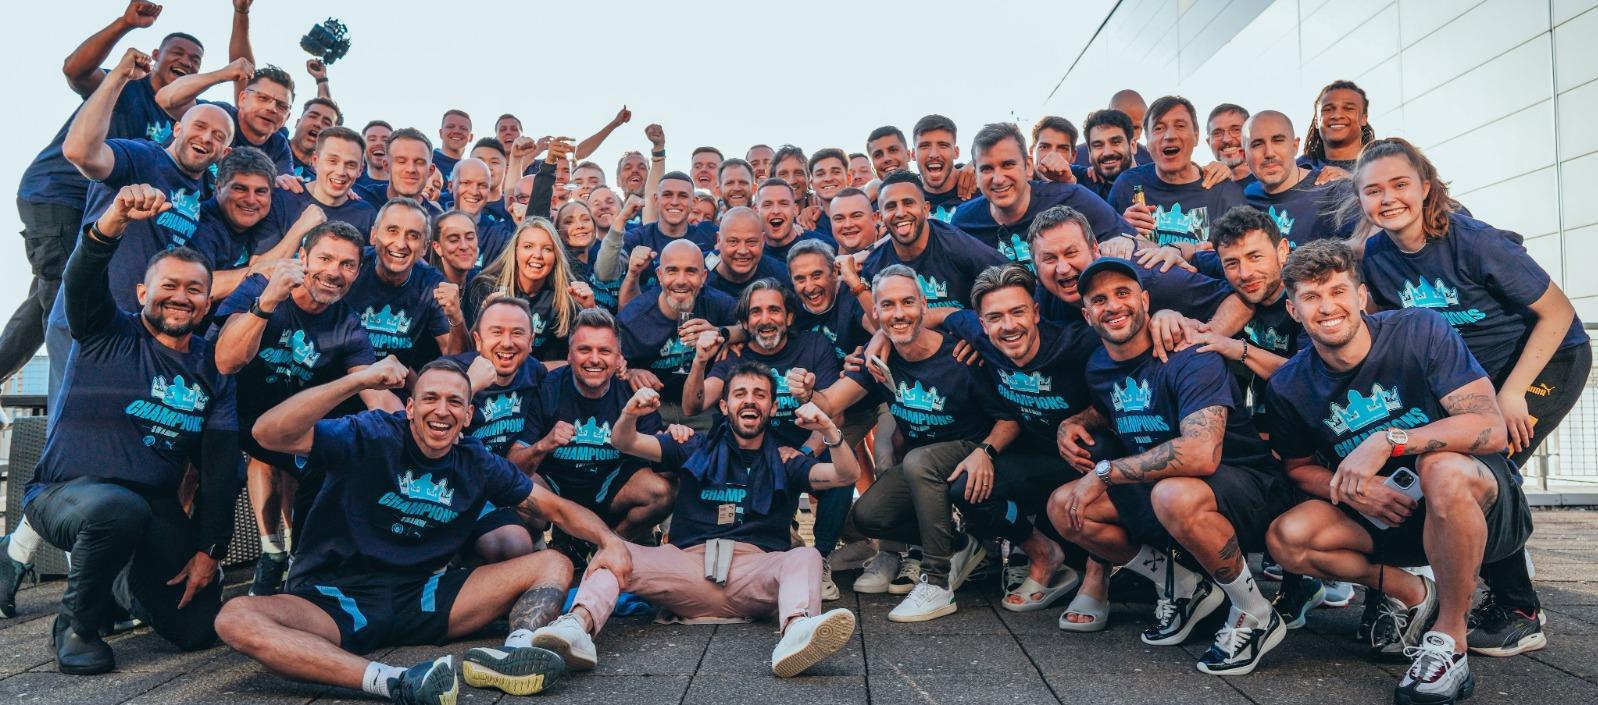 ¡Campeones! escribió el Manchester City en sus redes sociales